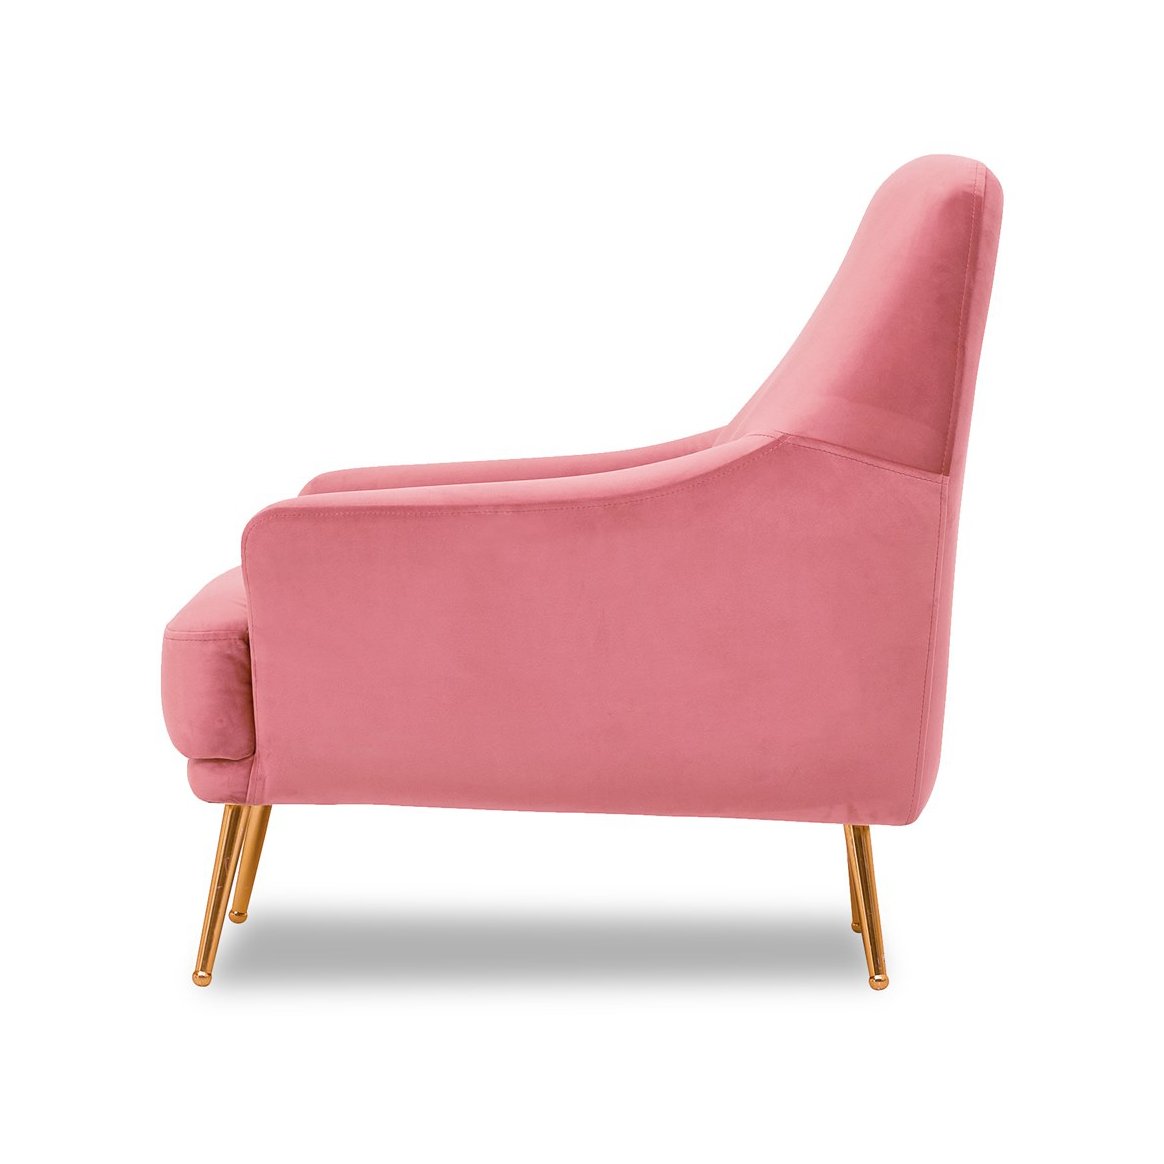 Кресло Enza Home Astoria, цвет розовый (126)126